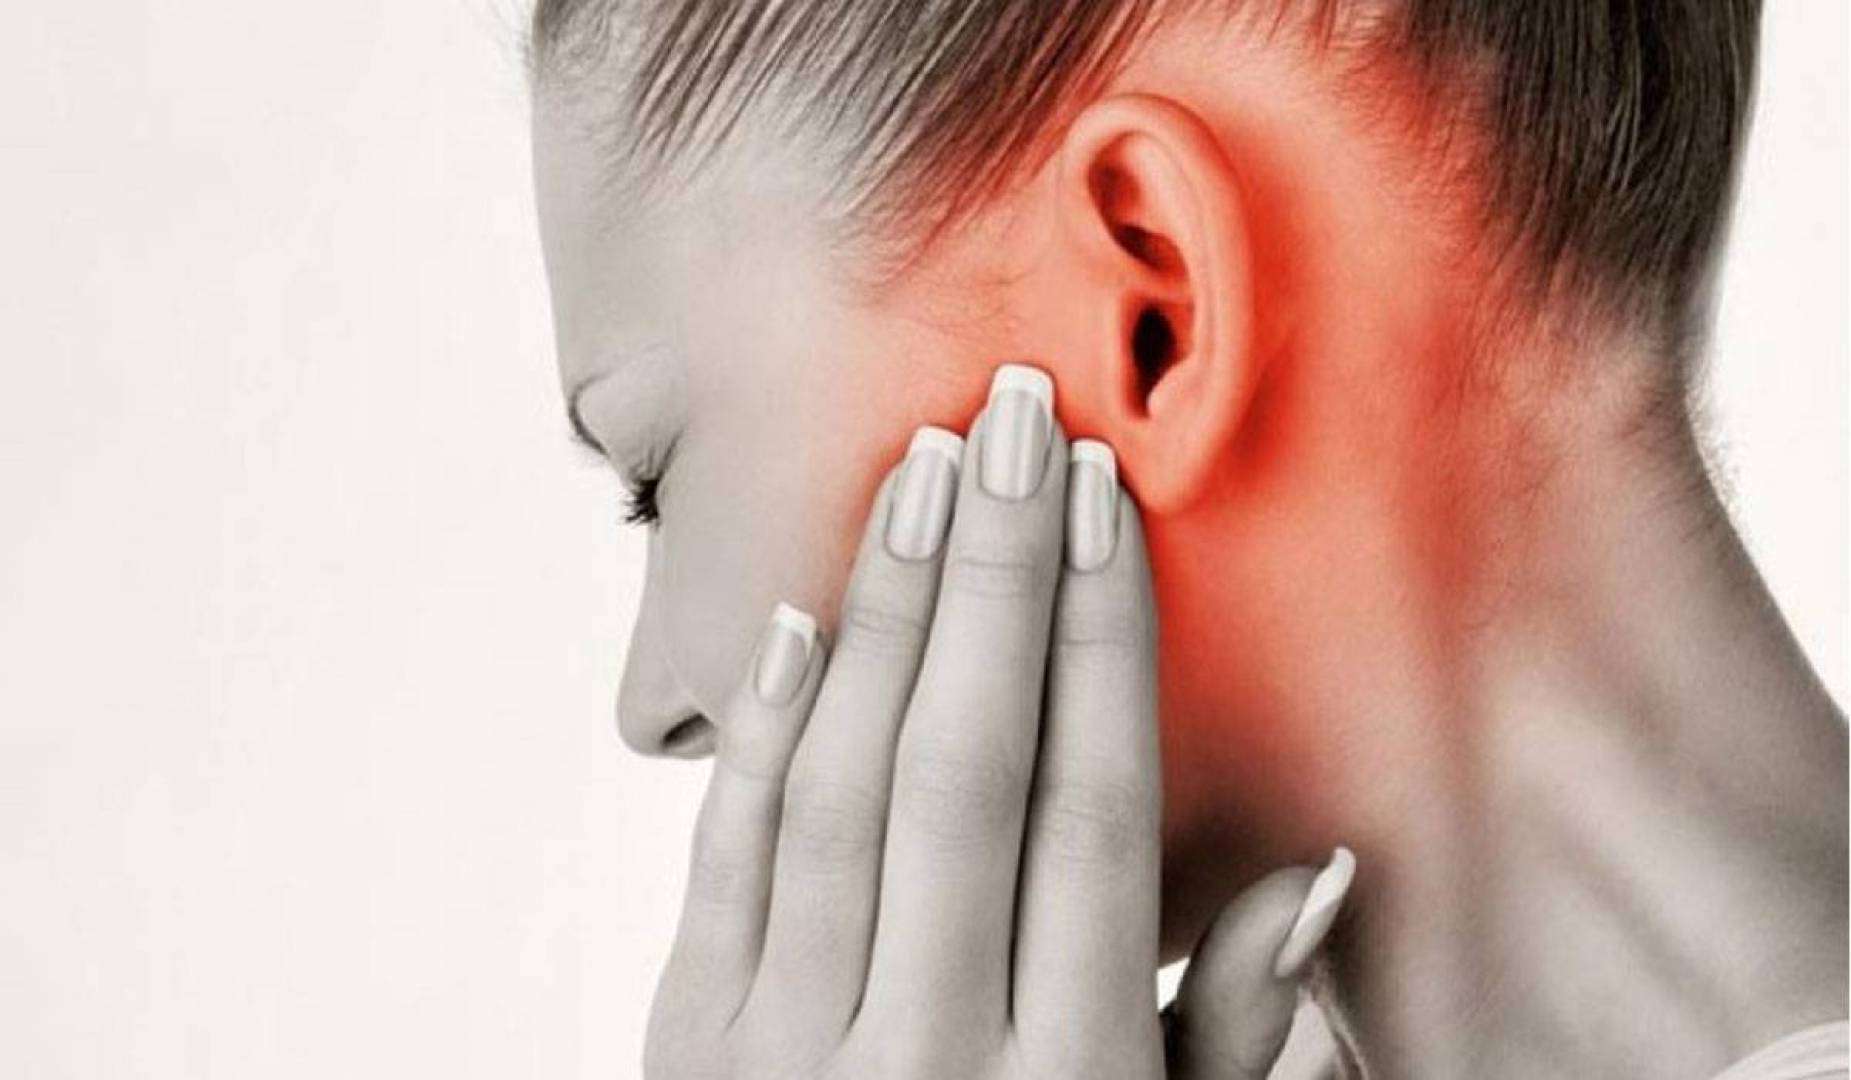 تمزق طبلة الأذن : الأعراض والأسباب | مجلة سيدات الامارات